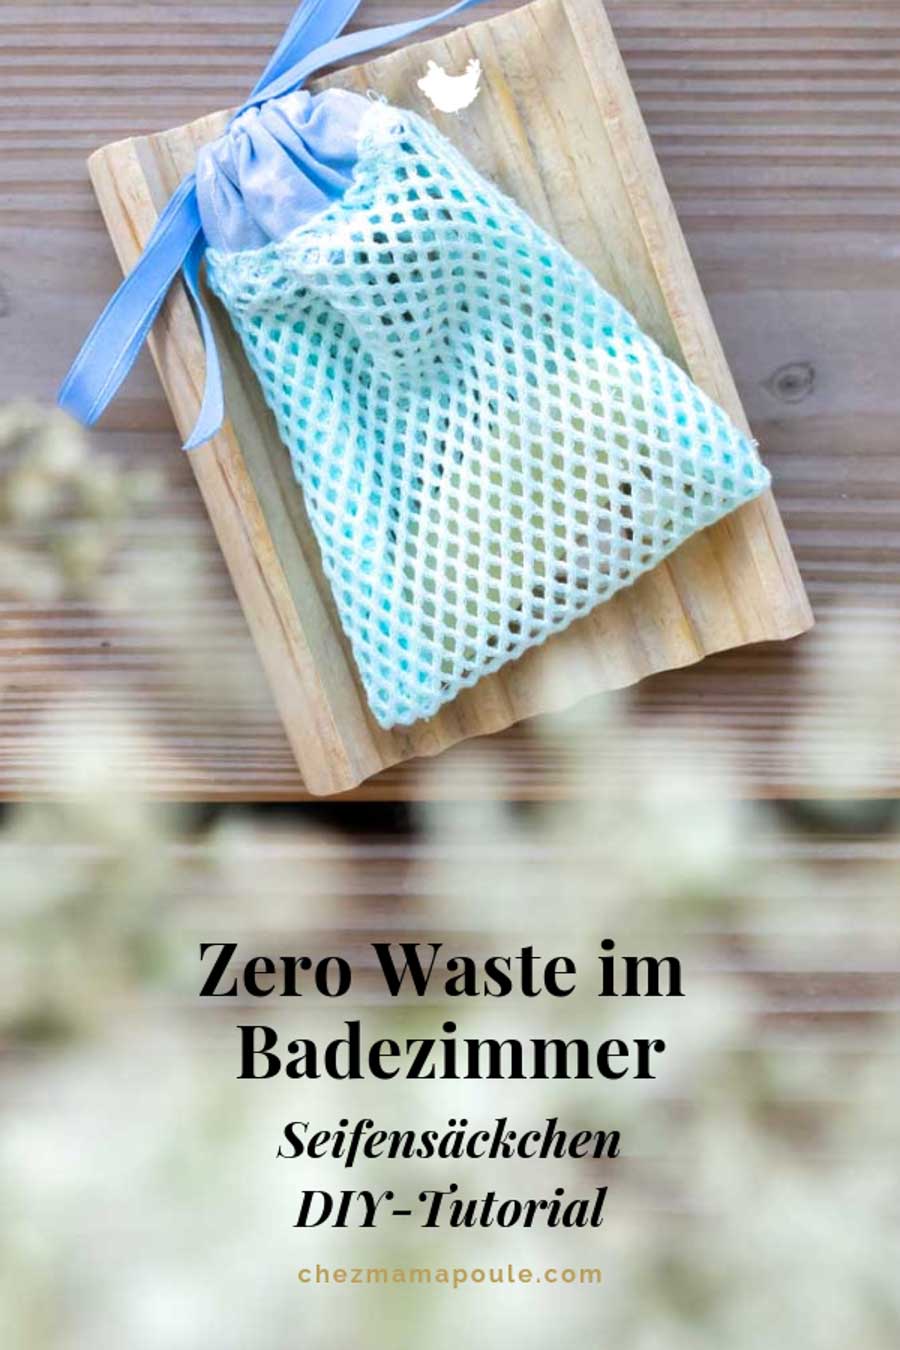 Seifensäckchen: Zero Waste im Badezimmer und eine DIY-Idee für weniger Abfall im Haushalt: www.chezmamapoule.com #zerowaste #unverpackt #lesswaste #diy #tutorial #zerowasteidee #nähen #zerowastegeschenke #seifensäckchen #tutorial